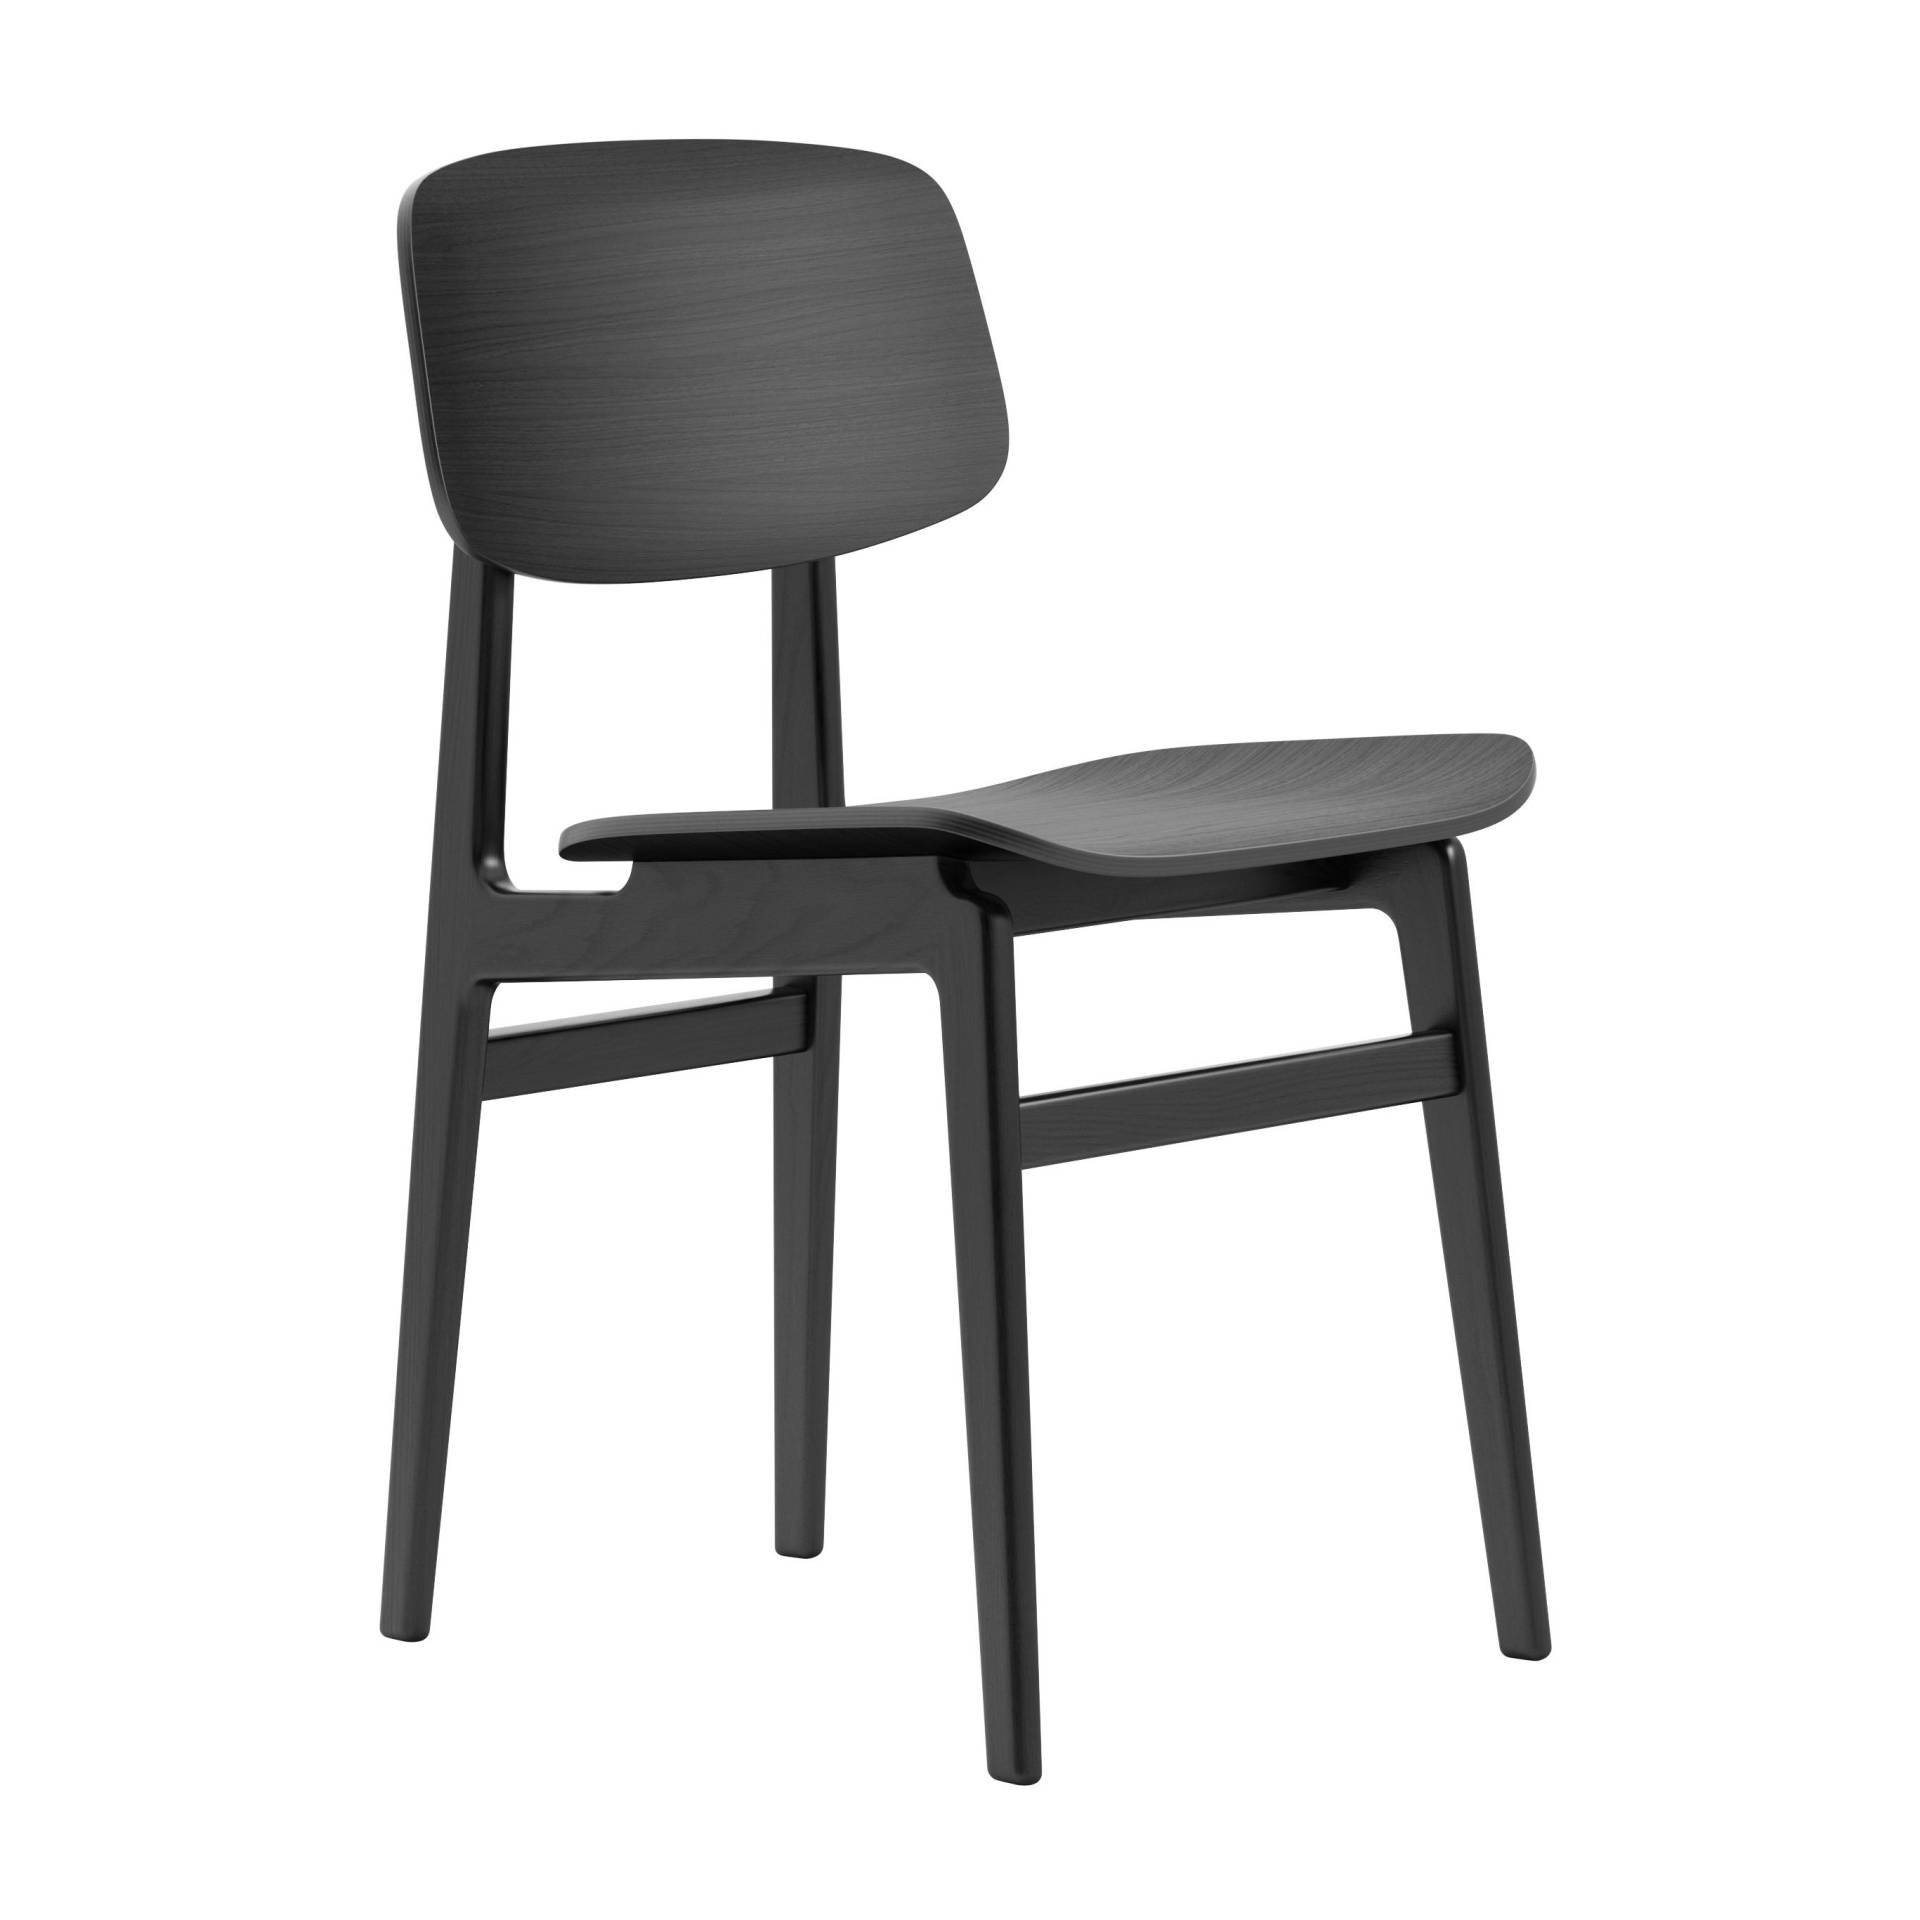 NORR 11 - NY11 Dining Chair - schwarz/Eiche laminiert furniert/BxHxT 45,5x78x52cm/Gestell Eiche schwarz von NORR 11